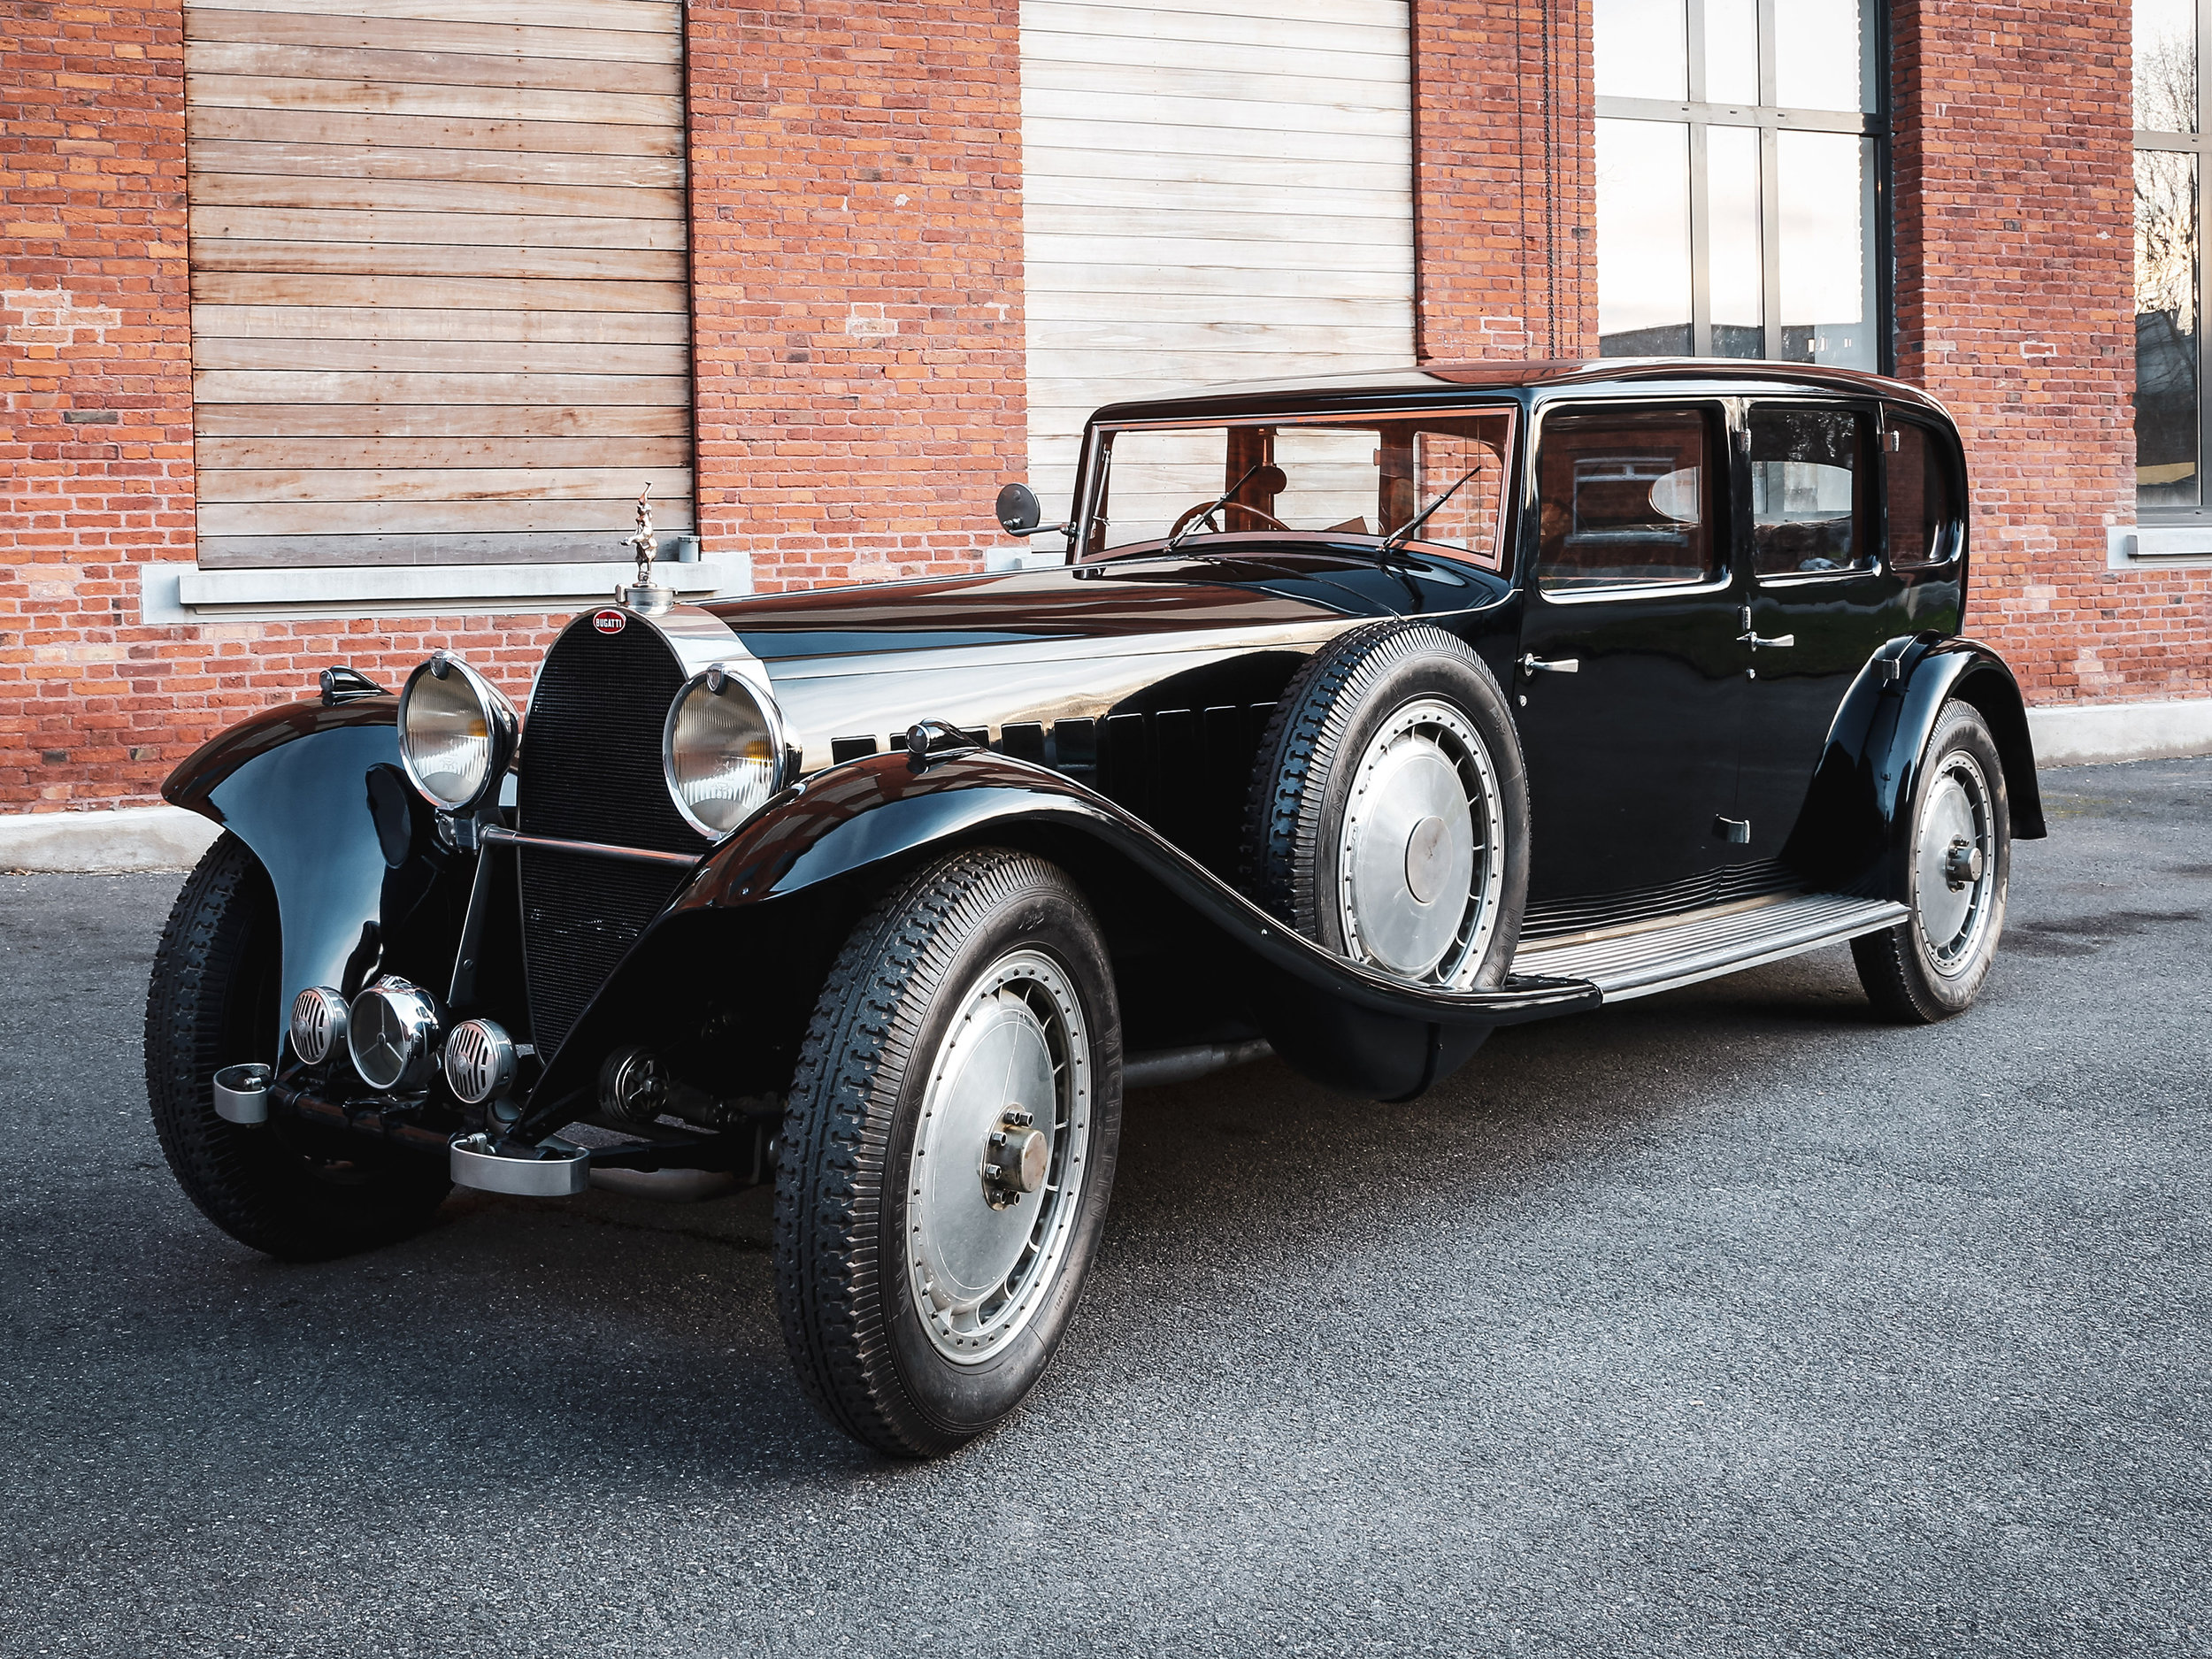 The Bugatti Royale was a of massive